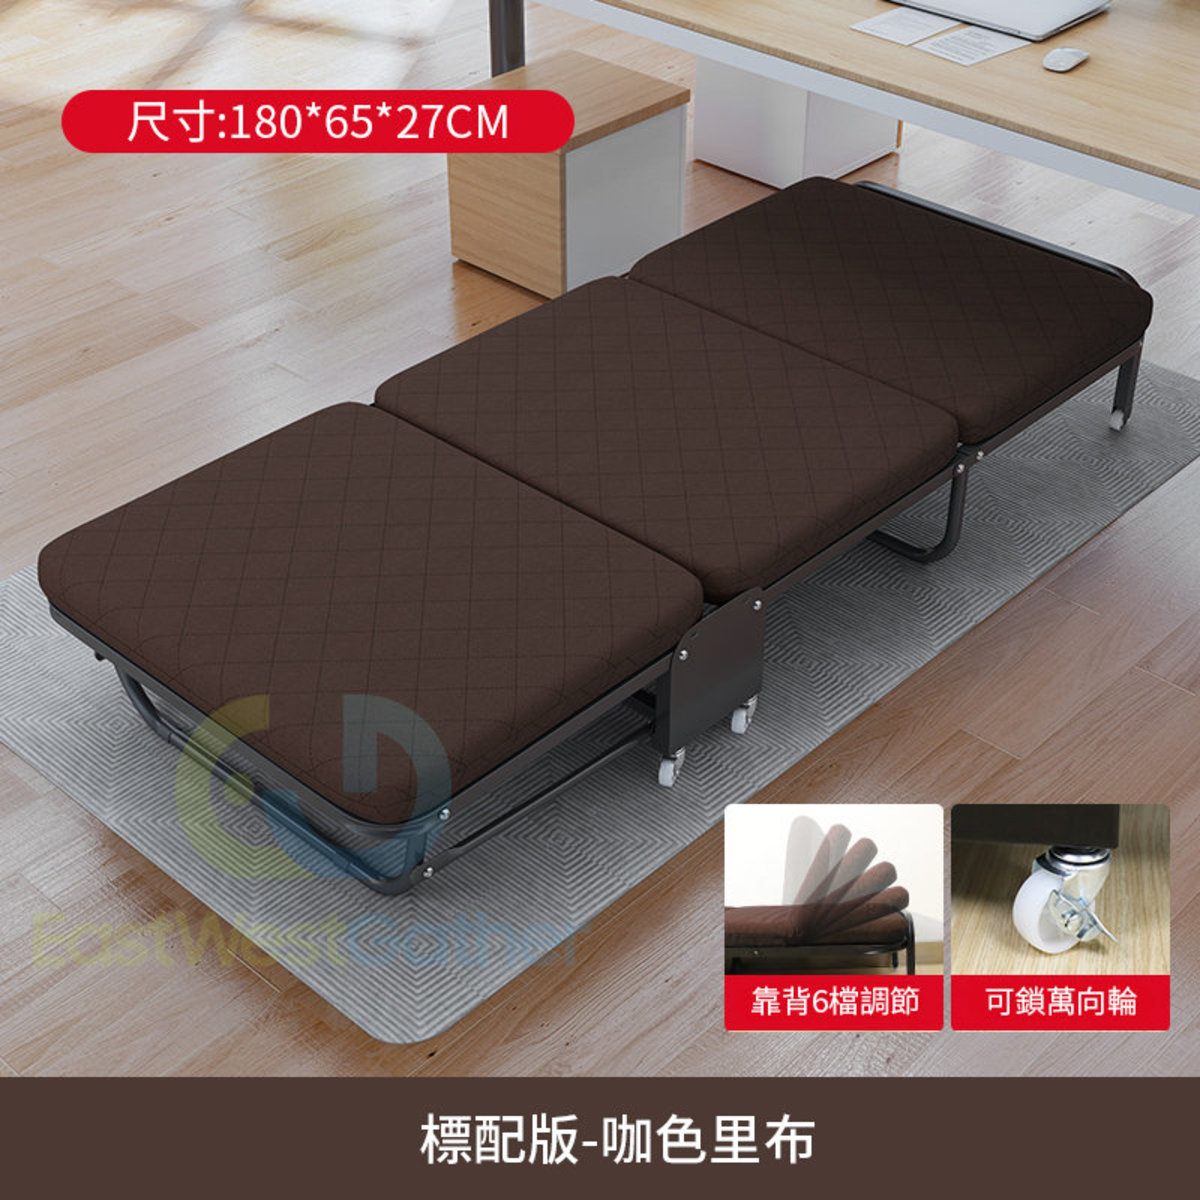 包安裝送貨標配版-咖色里布【65CM寬】摺疊床